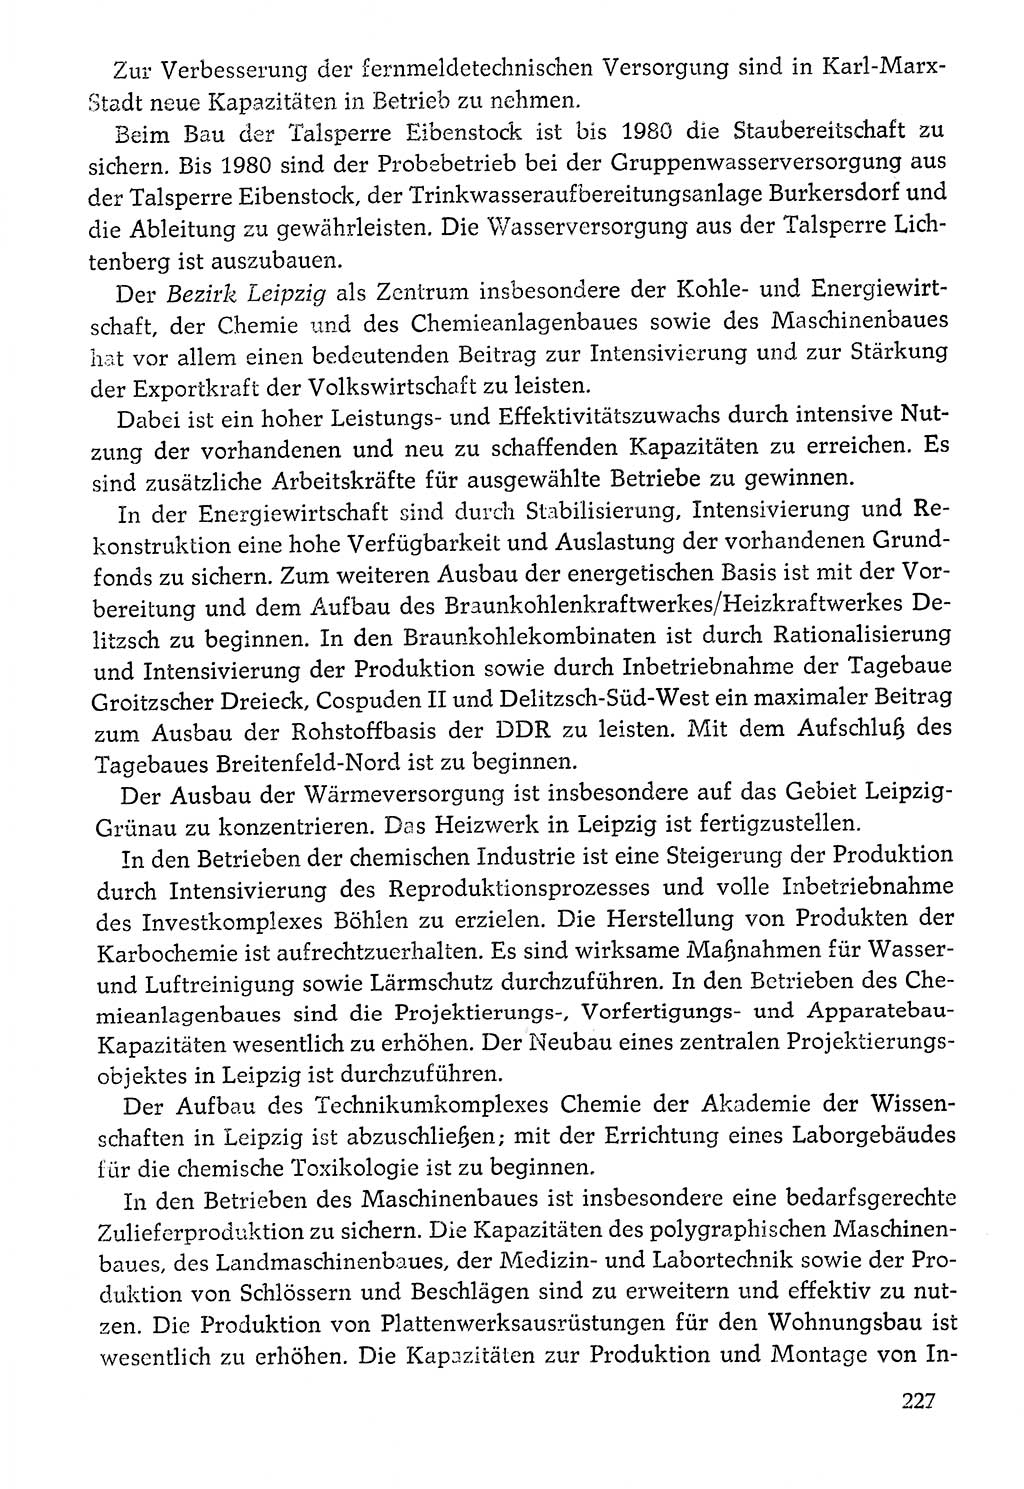 Dokumente der Sozialistischen Einheitspartei Deutschlands (SED) [Deutsche Demokratische Republik (DDR)] 1976-1977, Seite 227 (Dok. SED DDR 1976-1977, S. 227)